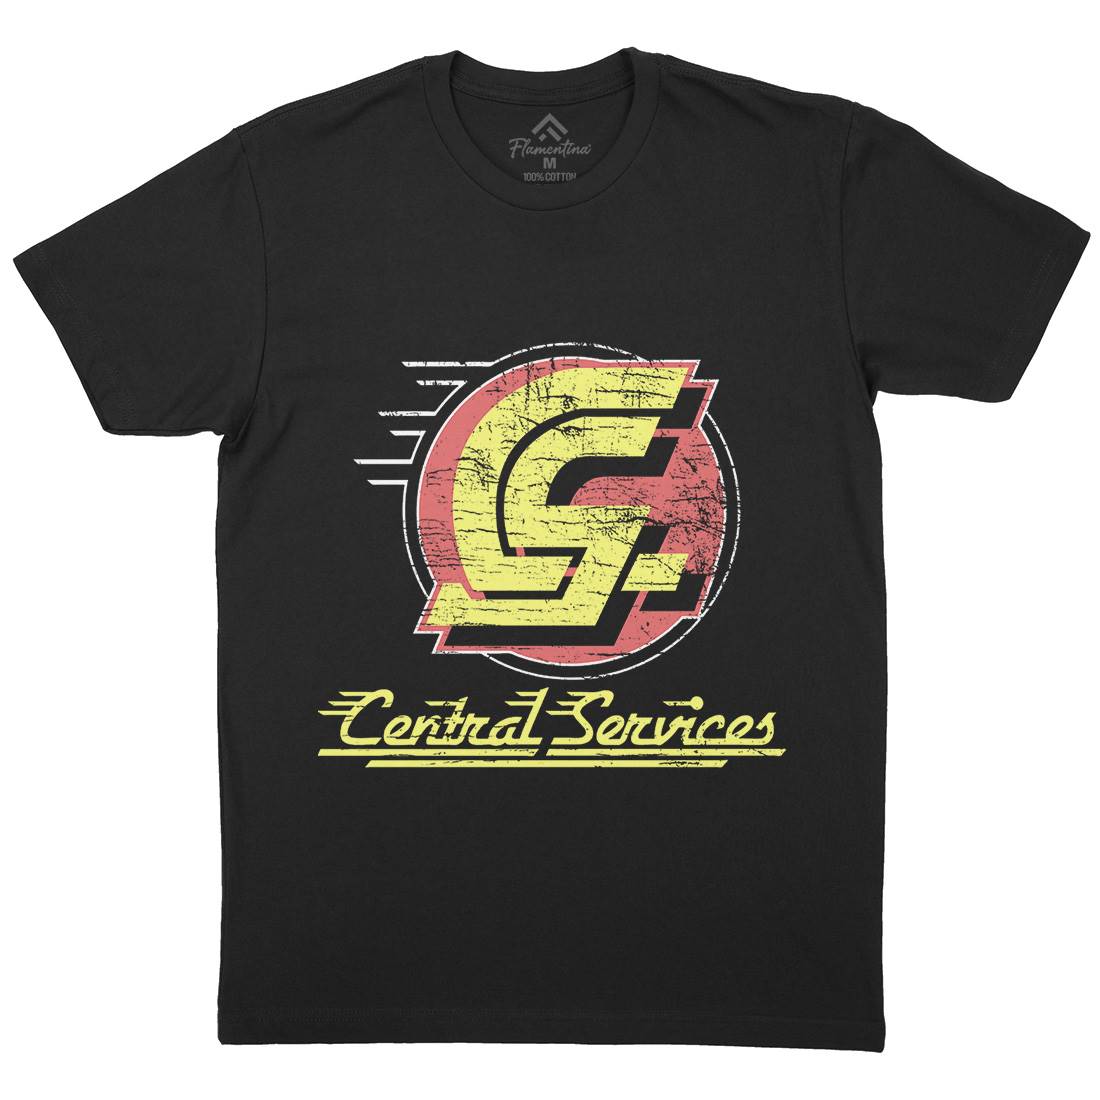 Central Services Mens Crew Neck T-Shirt Space D250